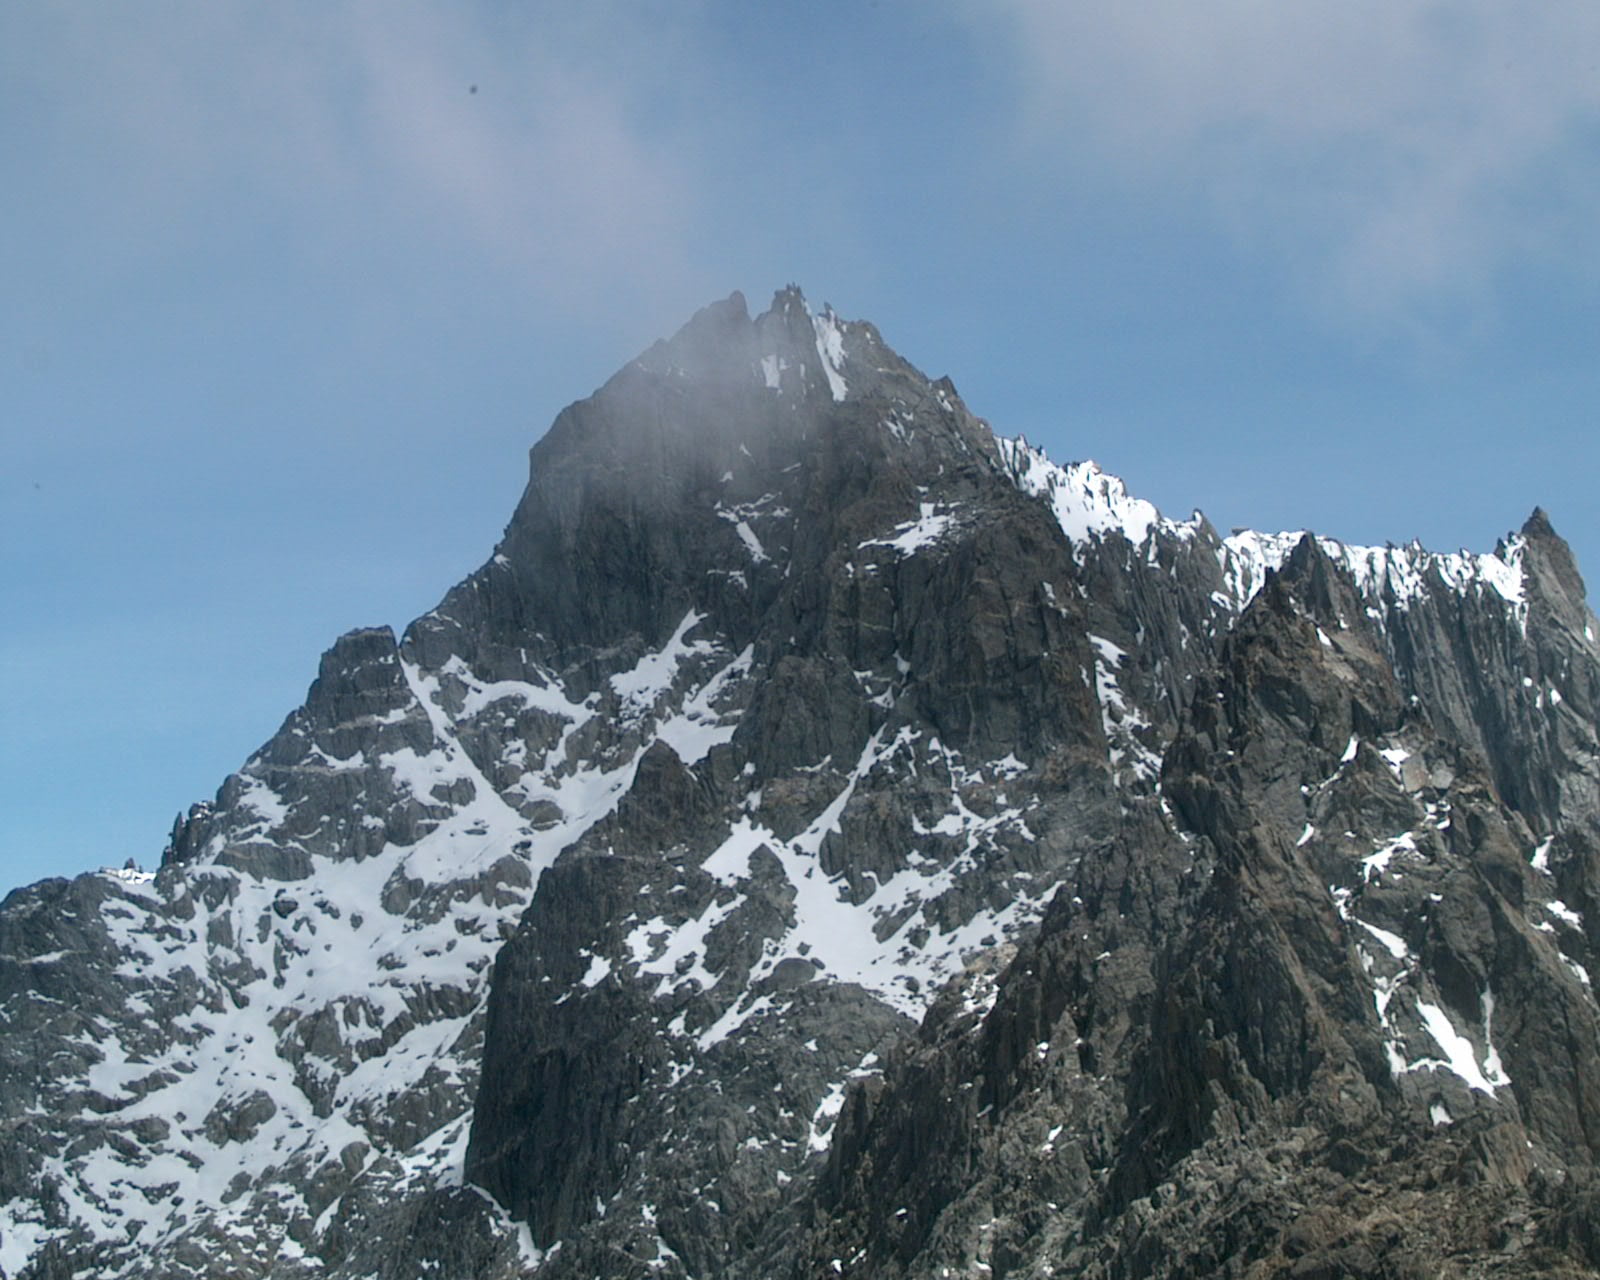 El pico Humboldt de Venezuela, último glaciar en este país y pronto desaparecerá.